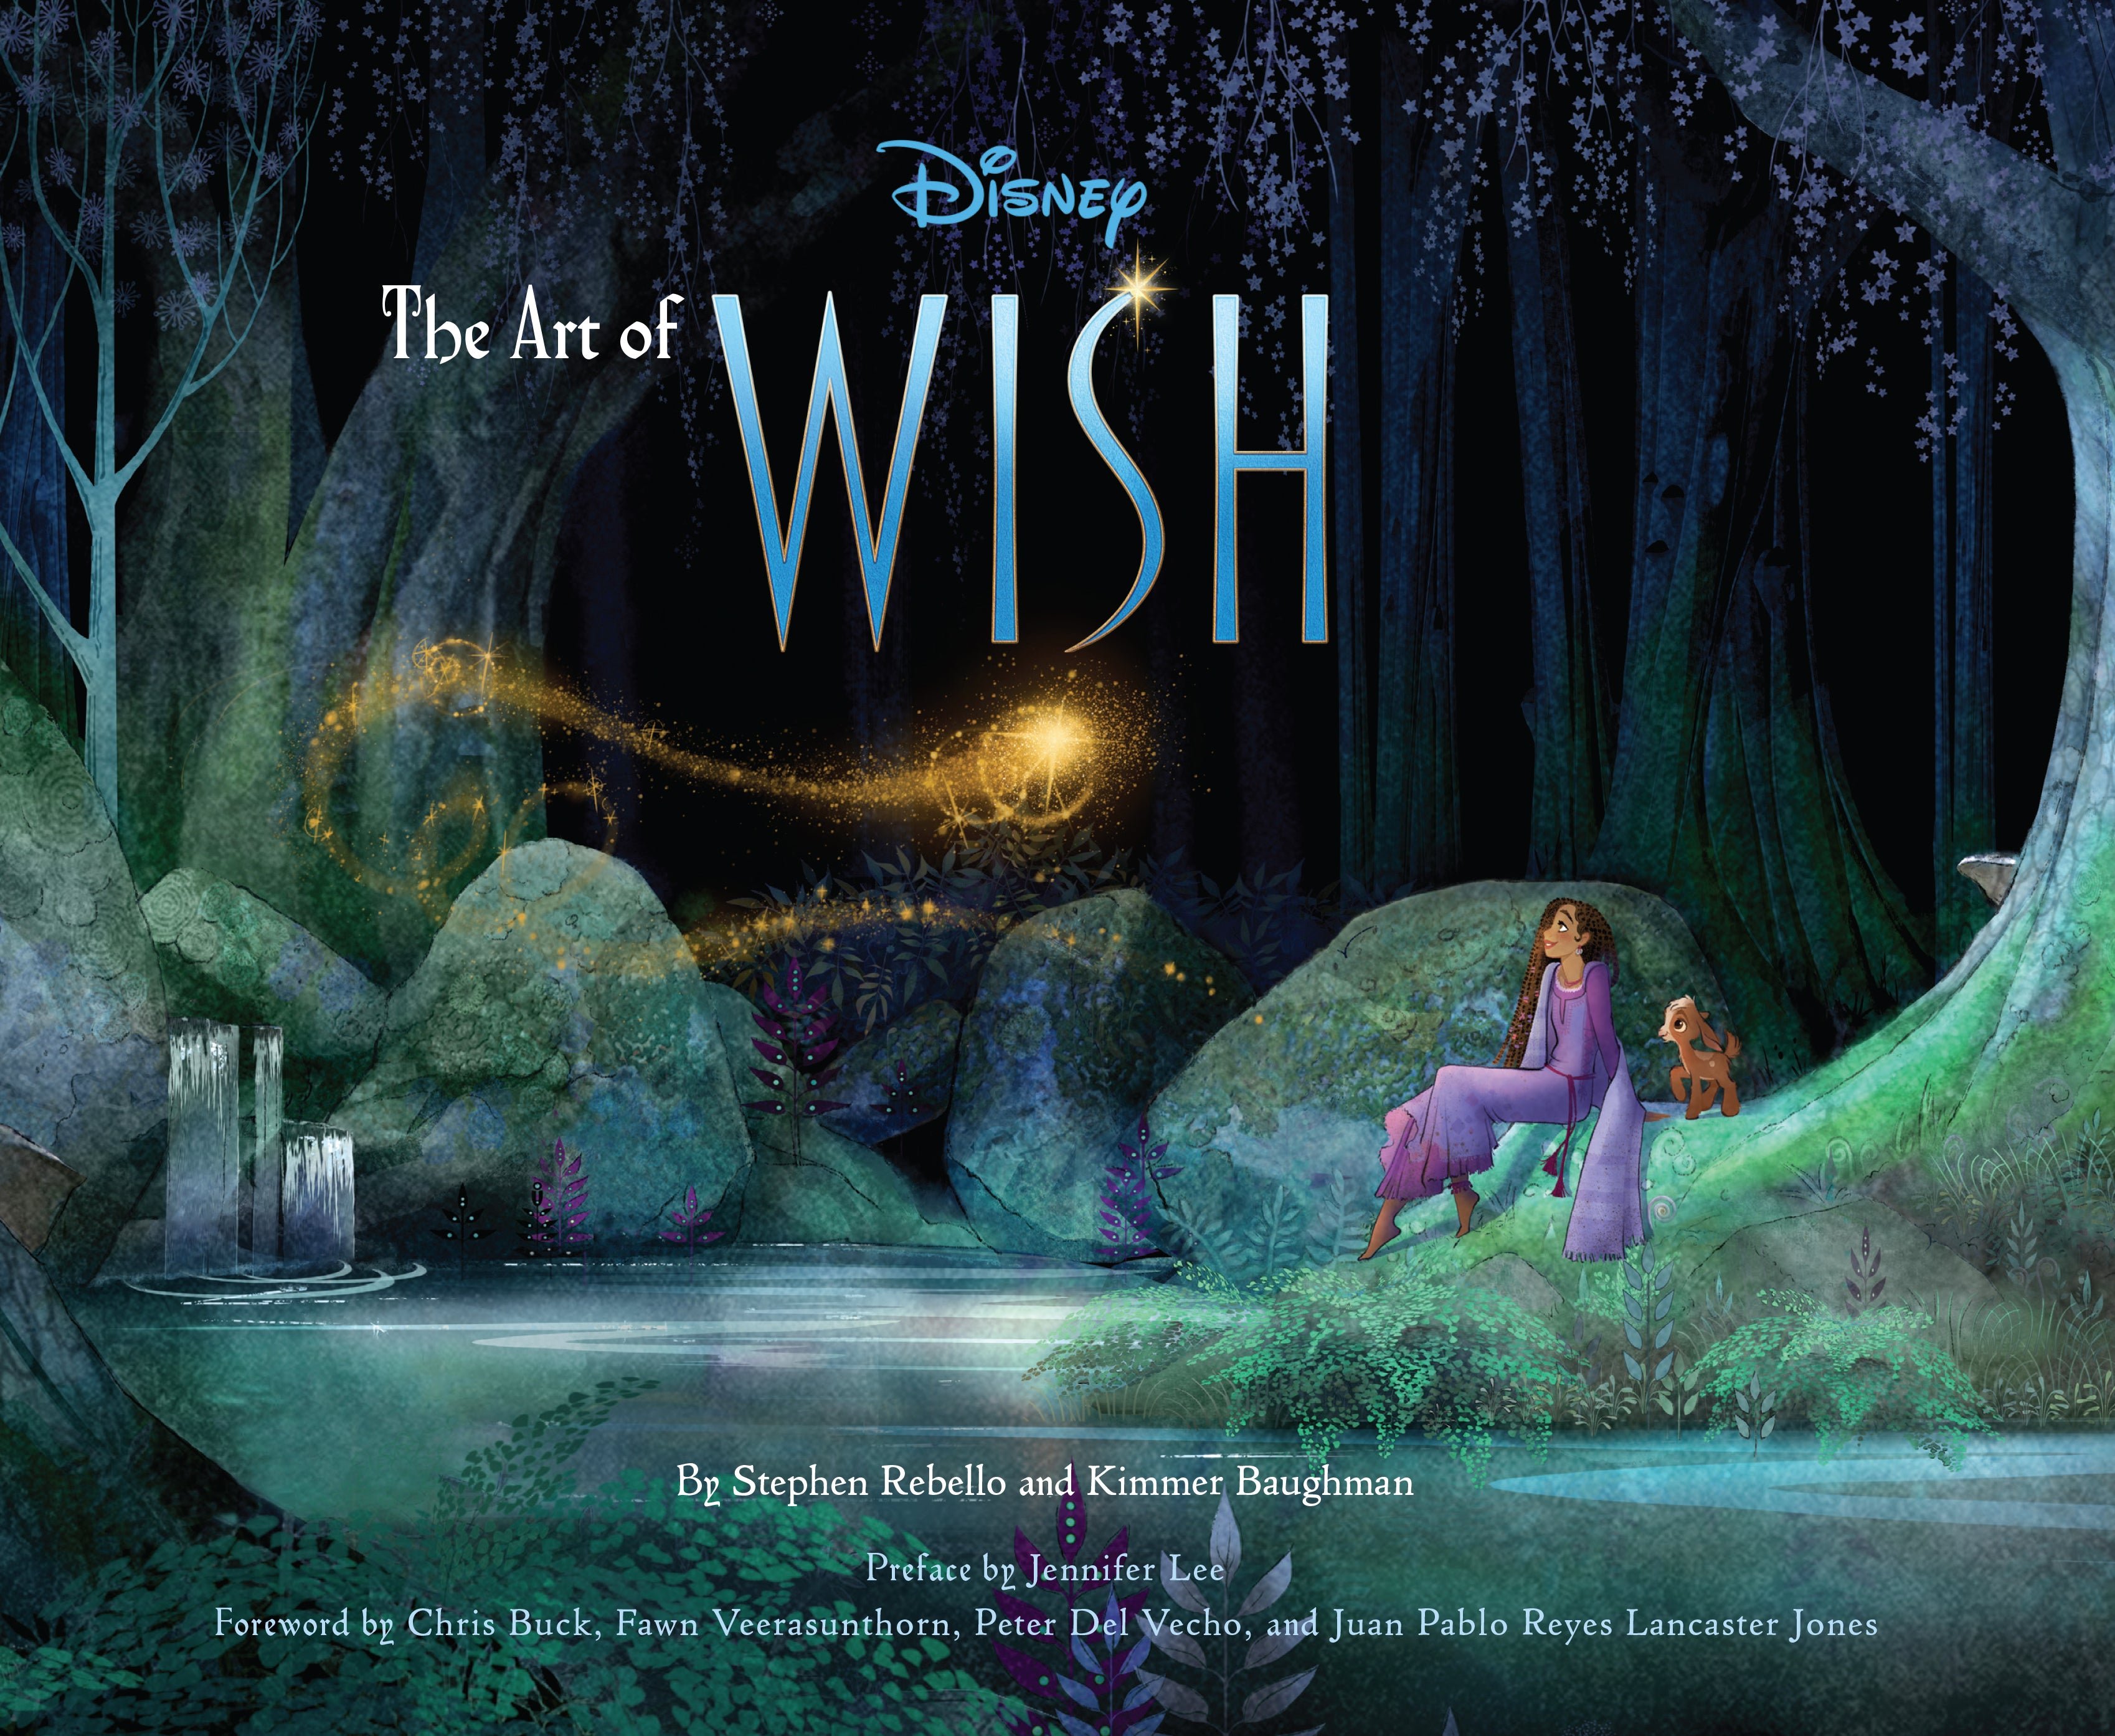 Disney's 'Wish' Movie: Everything to Know